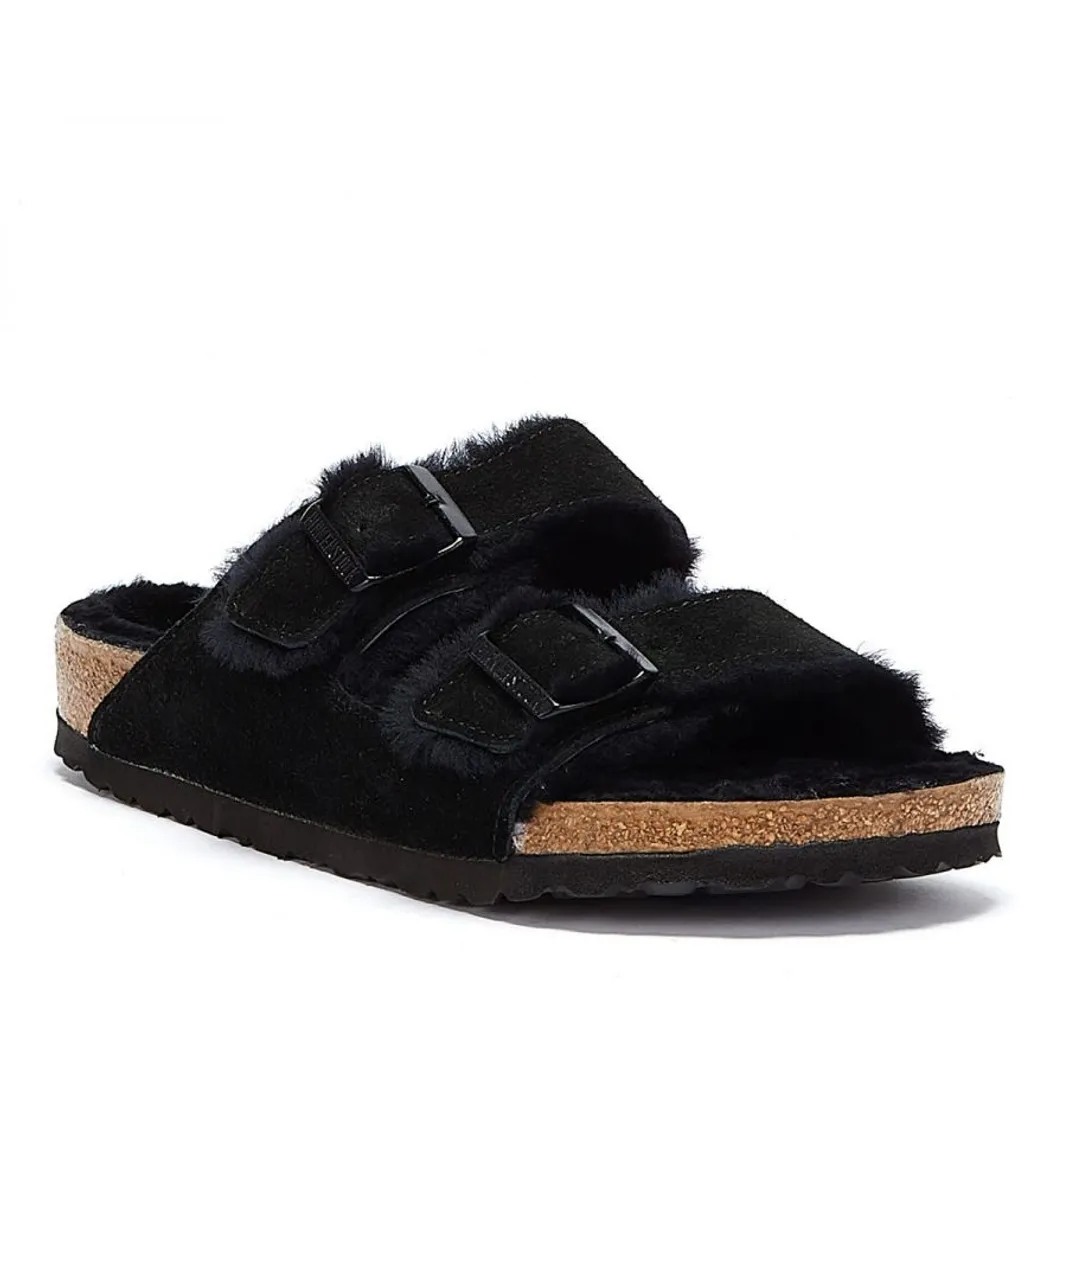 Birkenstock Unisex Arizona Fur Black Sandals Suede